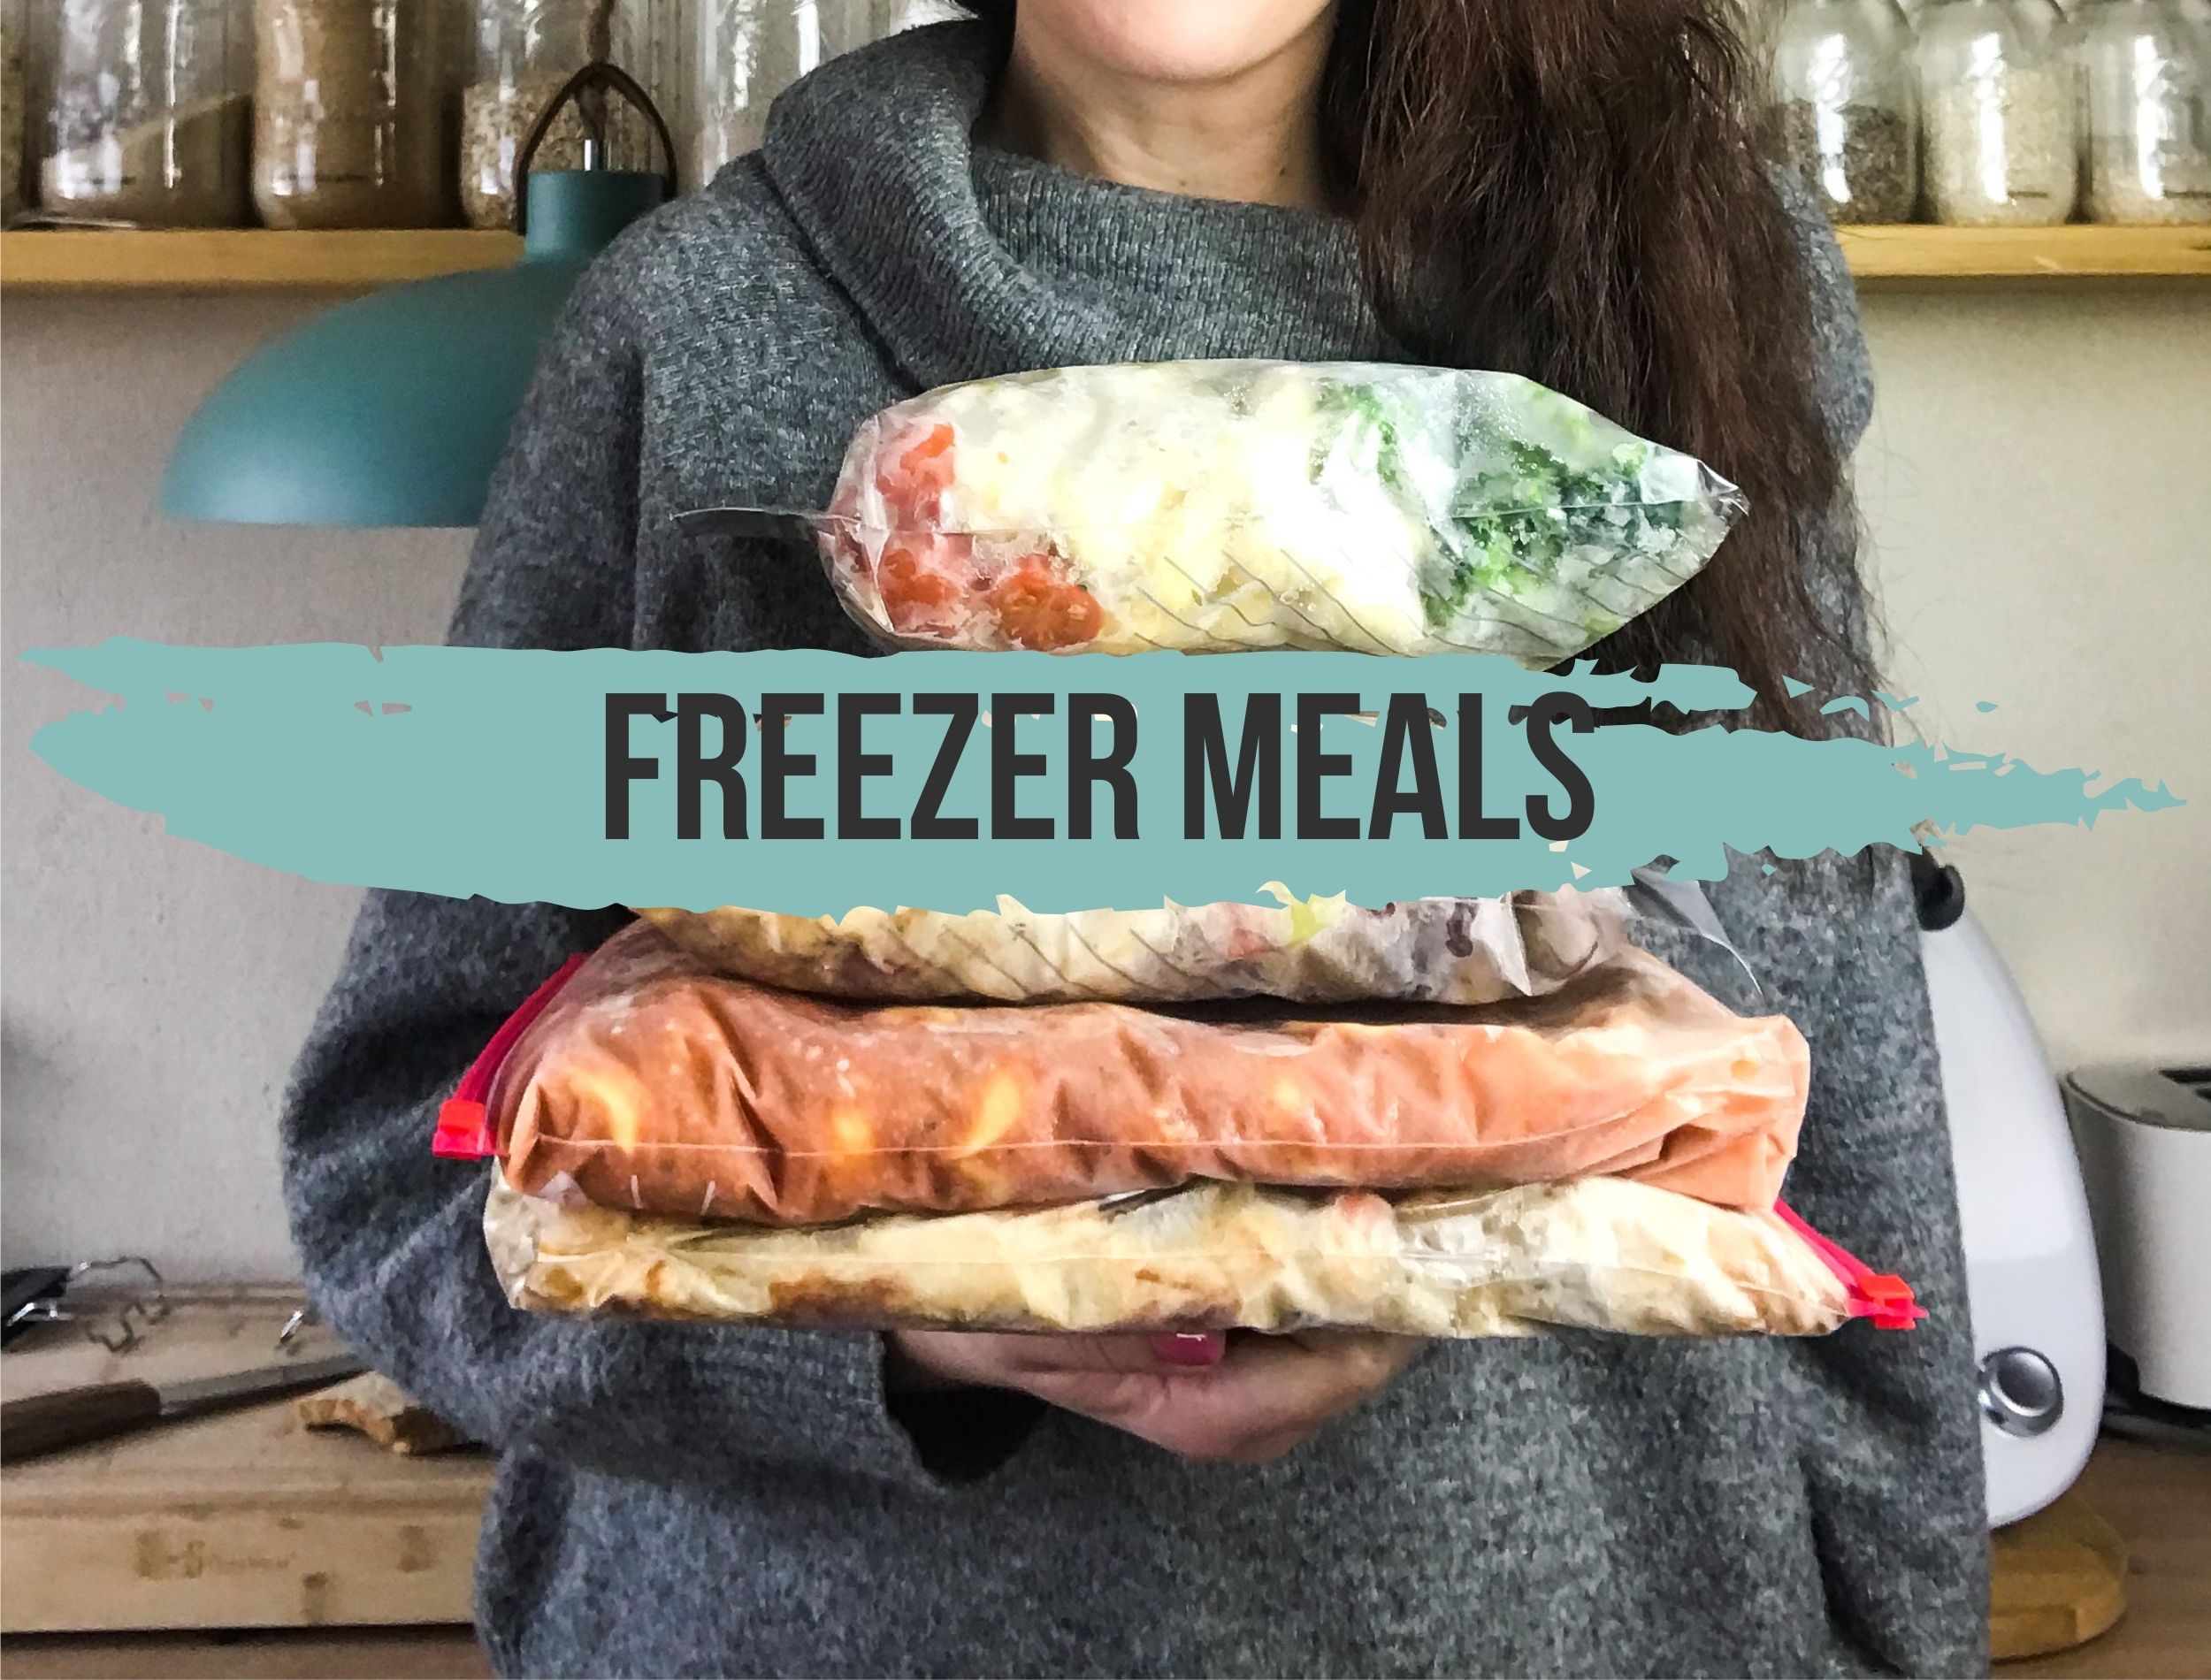 Freezer Meals: Das Bild zeigt eine Person, die mehrere eingefrorene Mahlzeiten flach in Gefrierbeuteln in der Hand hält.